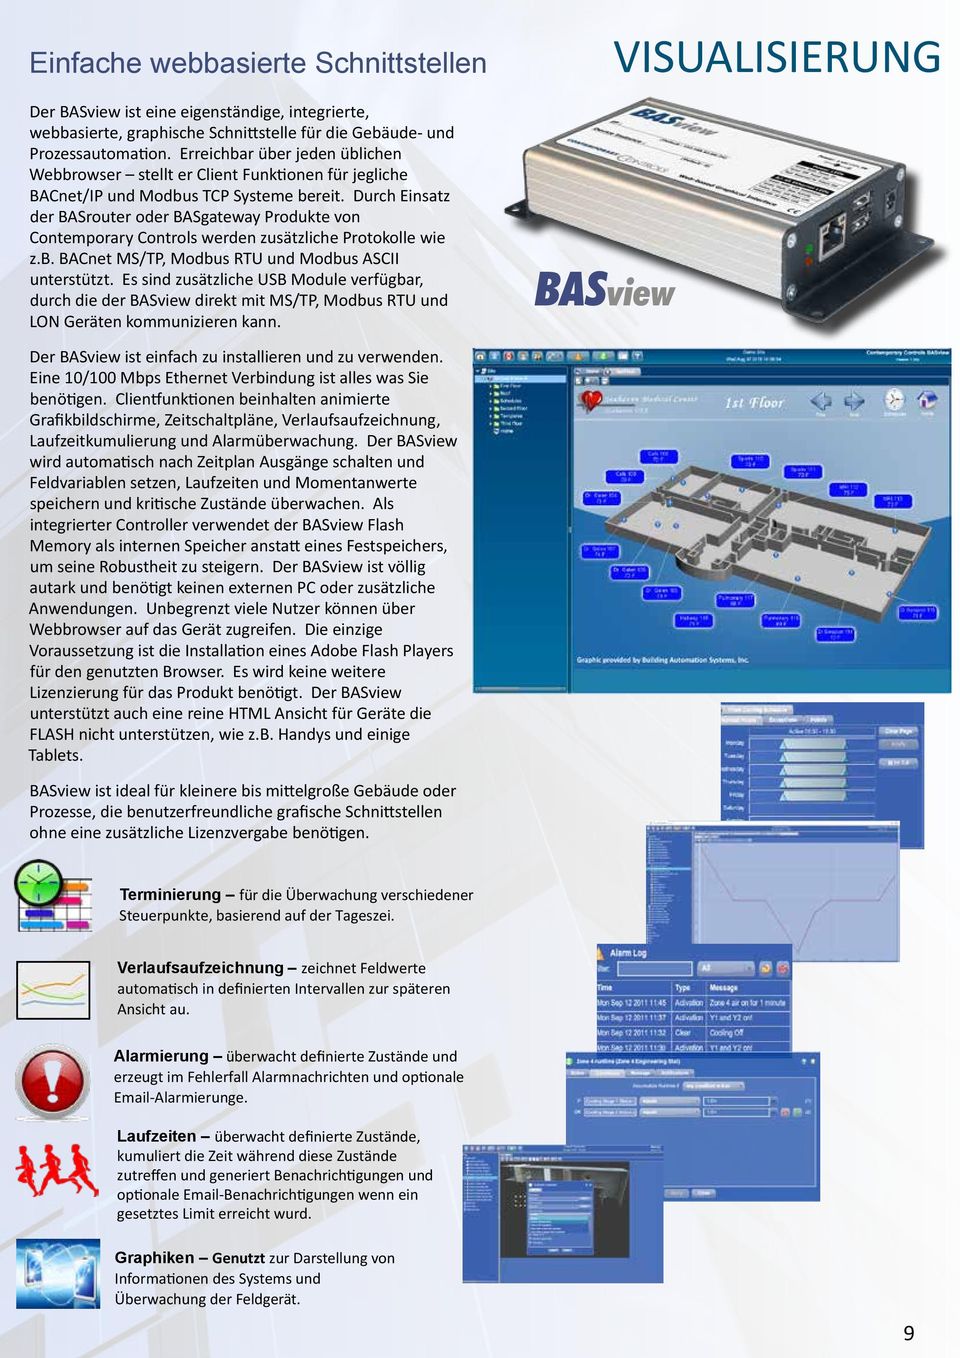 Durch Einsatz der BASrouter oder BASgateway Produkte von Contemporary Controls werden zusätzliche Protokolle wie z.b. BACnet MS/TP, Modbus RTU und Modbus ASCII unterstützt.